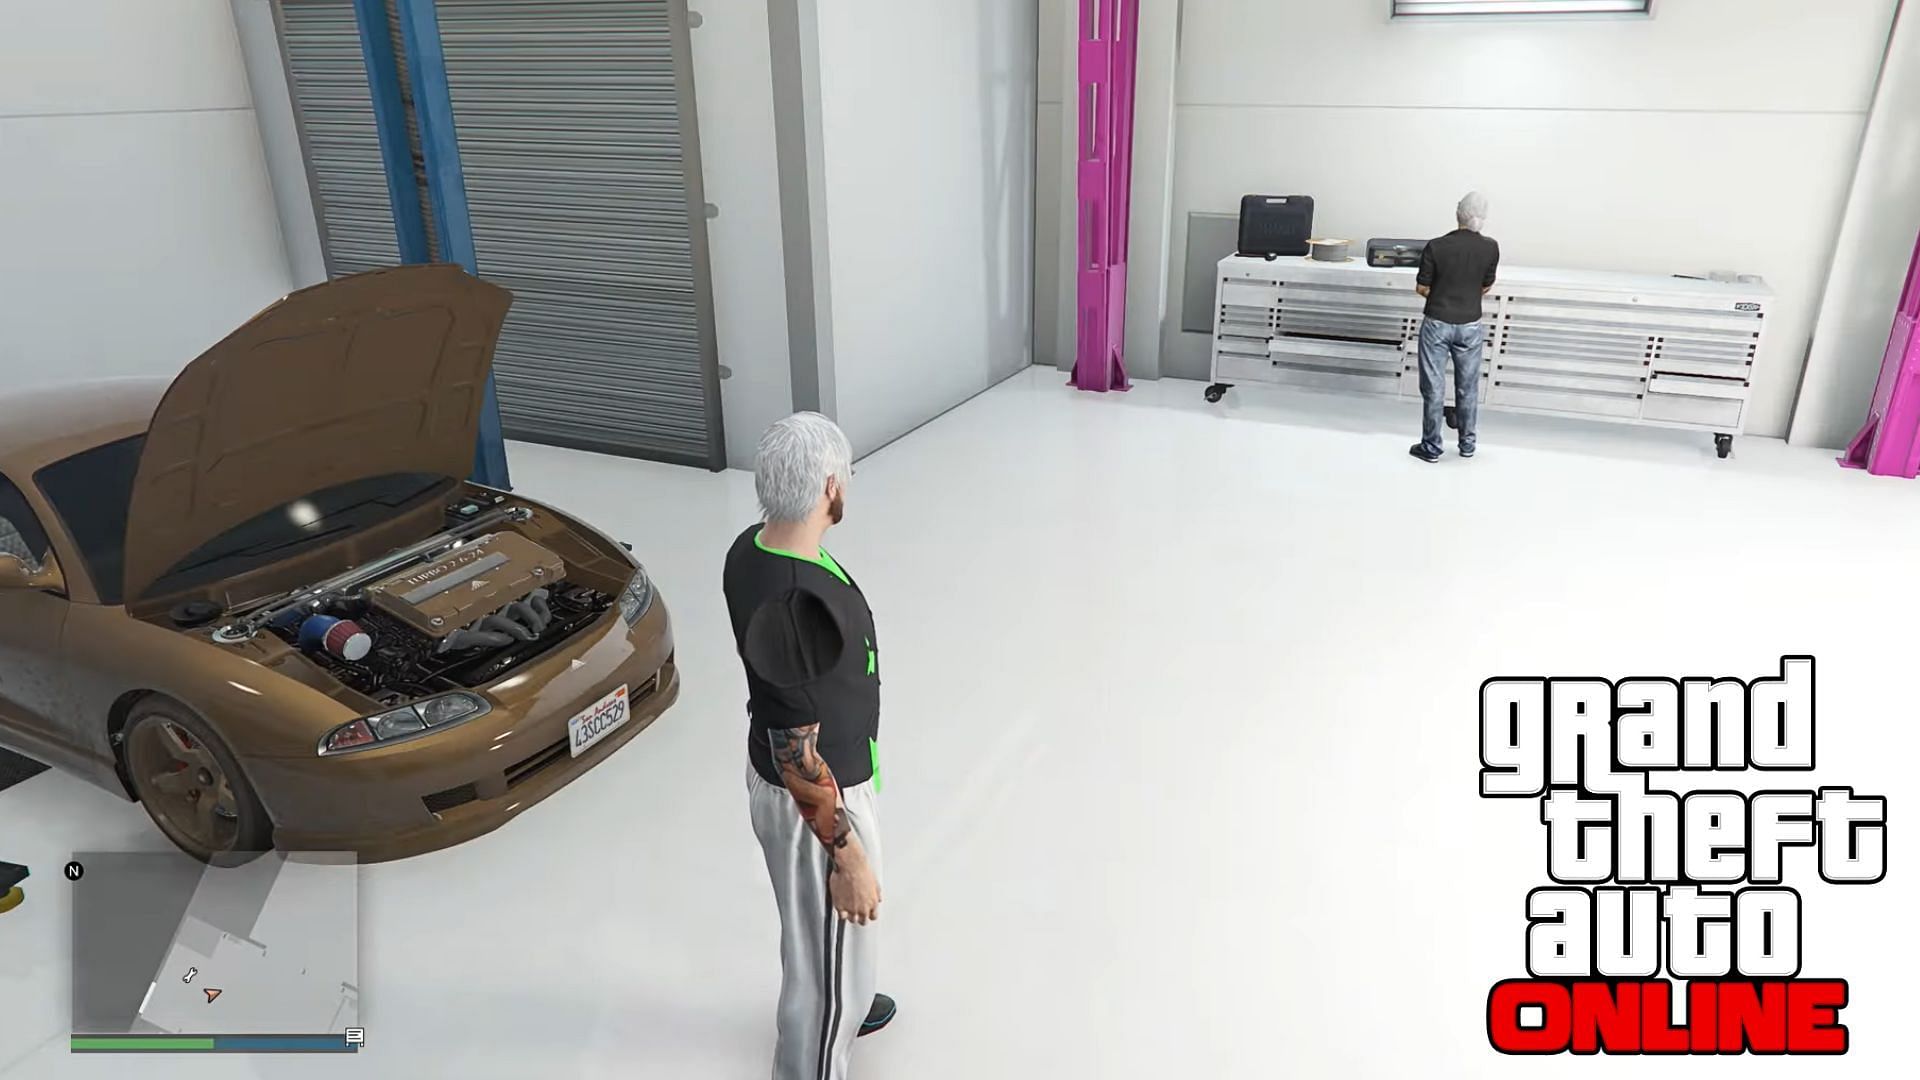 SuperXee Glitches using the Auto Shop money glitch in GTA Online (Image via YouTube)